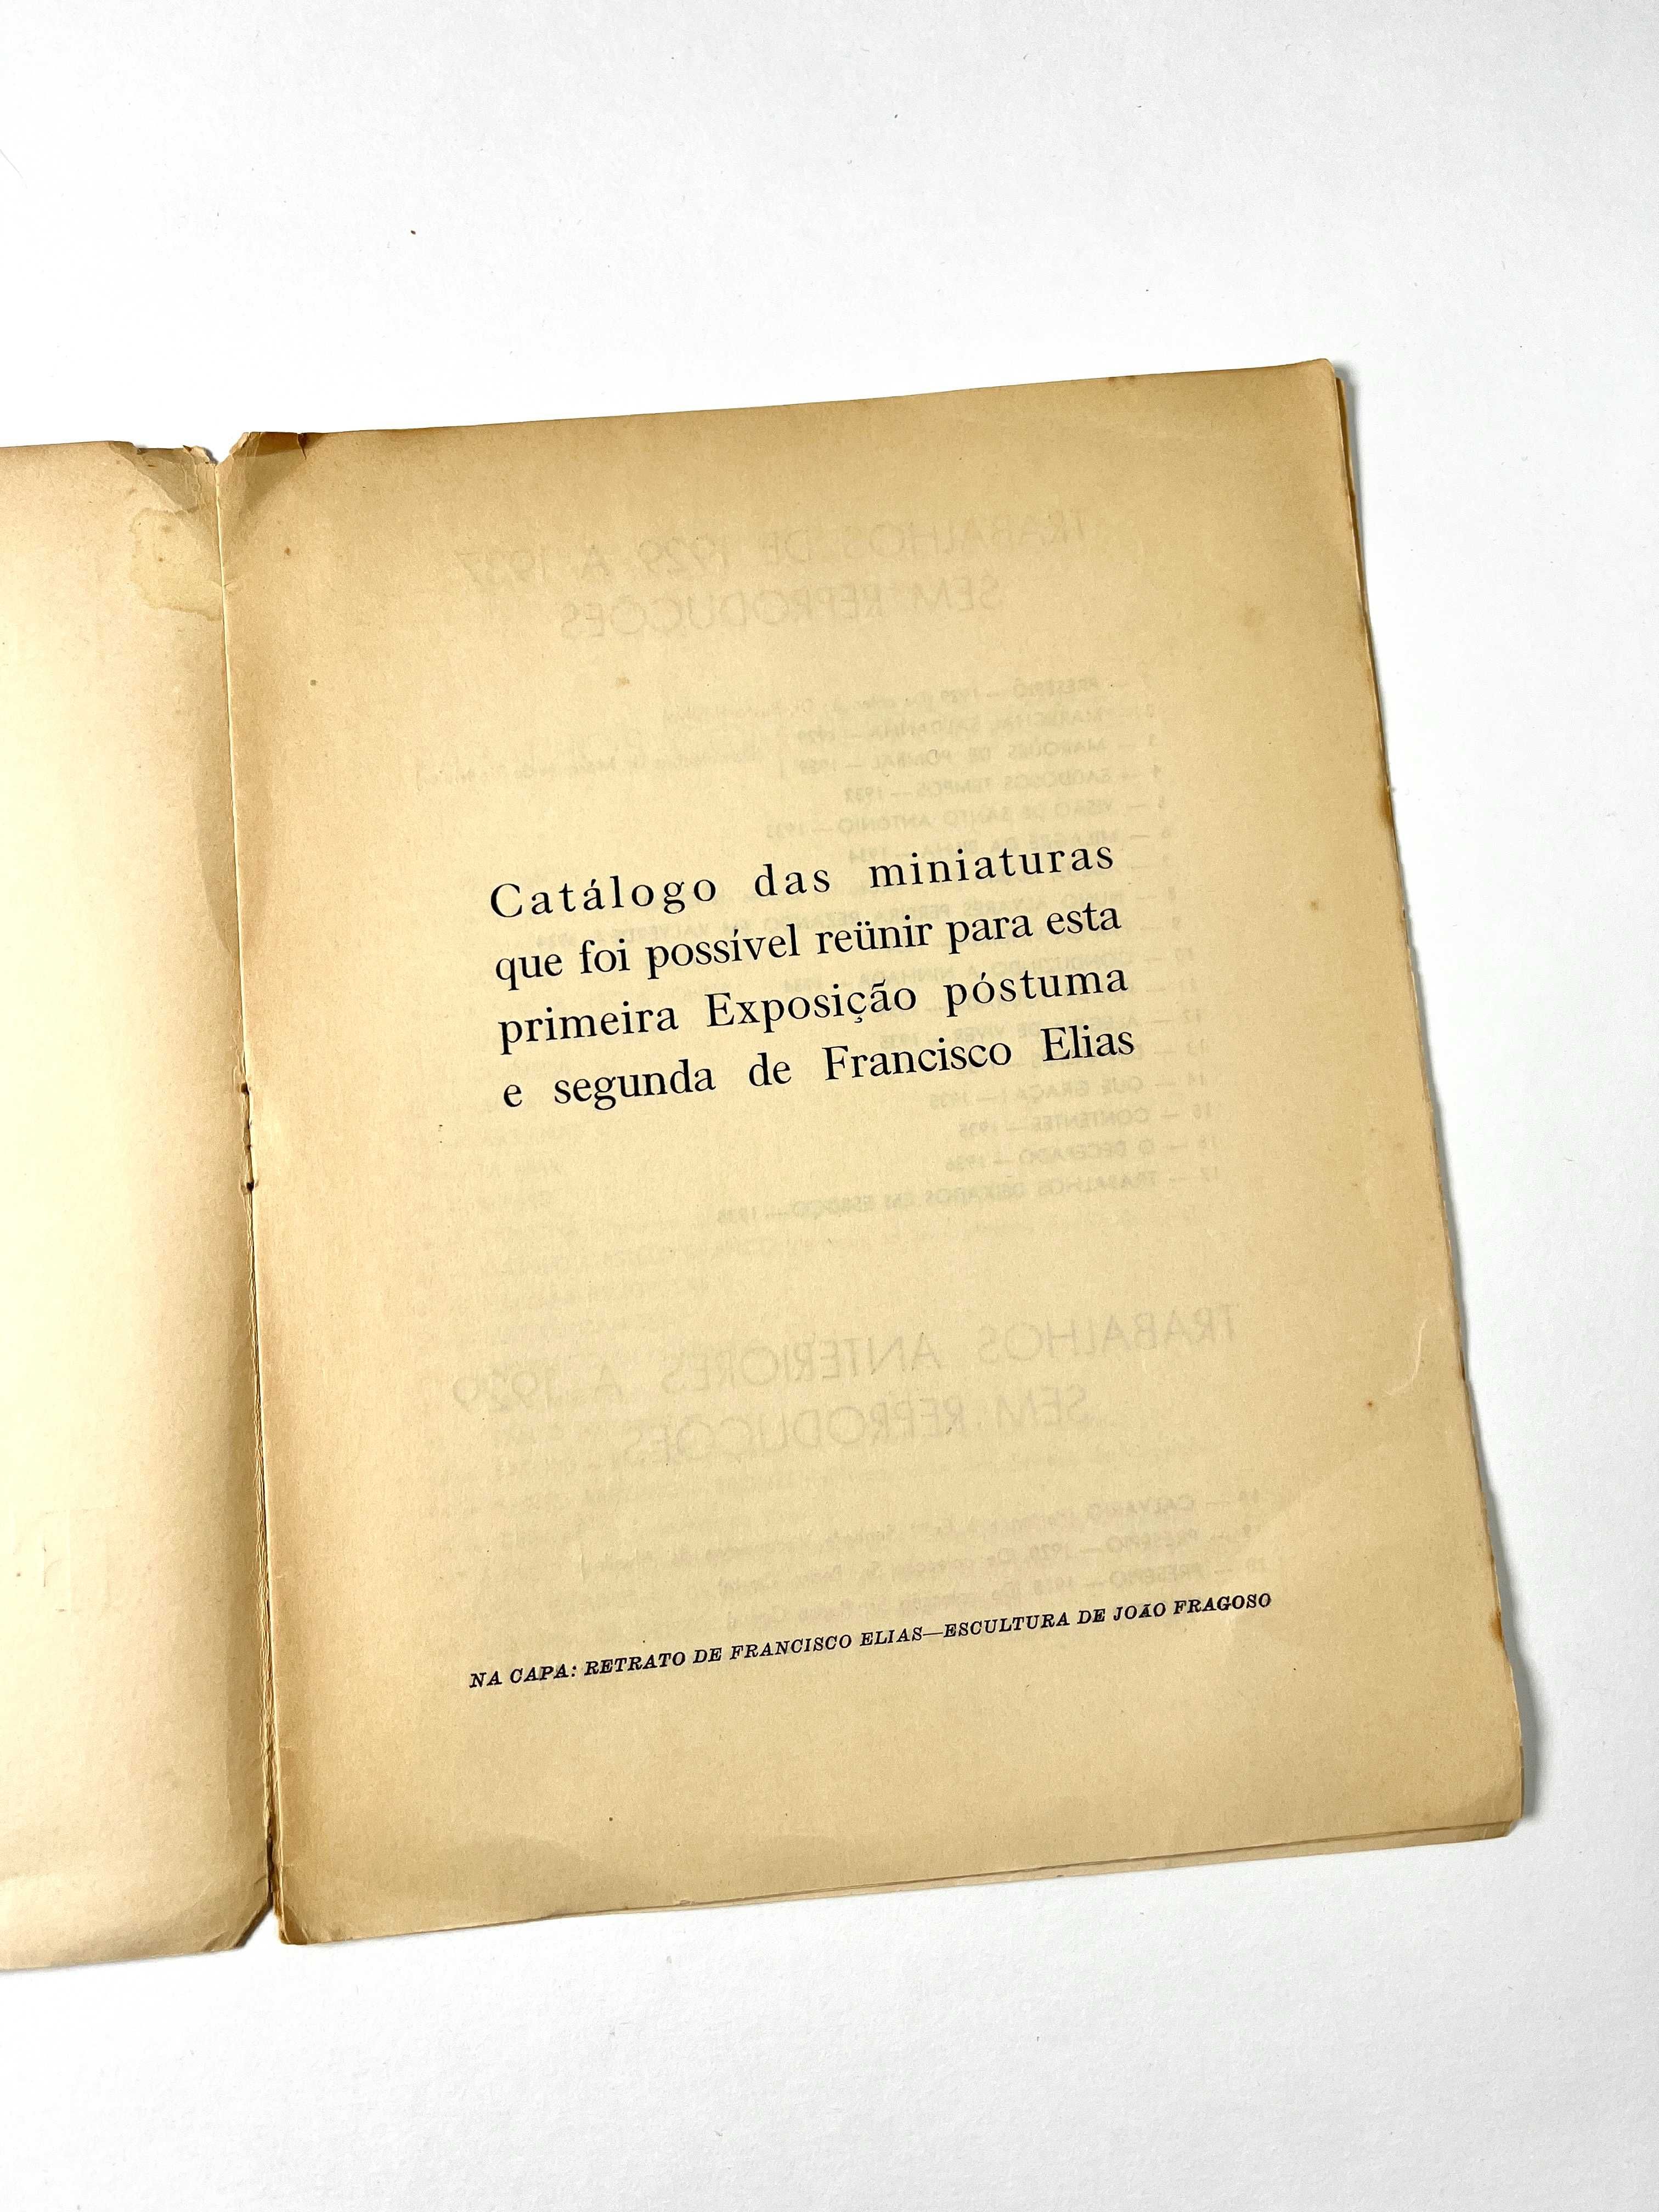 Catálogo de exposição Franscisco Elias Escultura S.P.N.1943